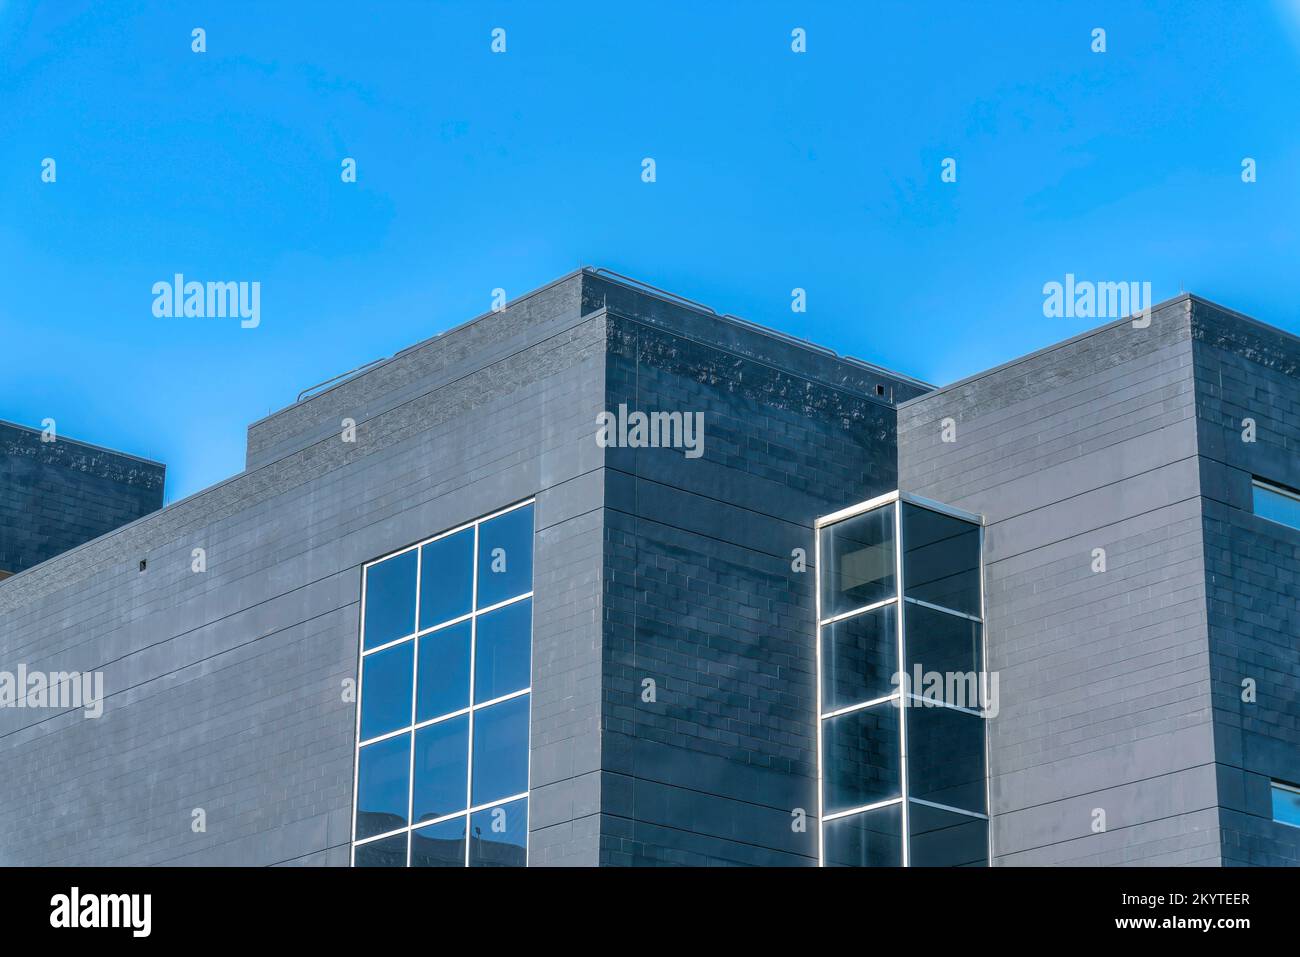 Austin, Texas: Modernes Gebäude mit grauen Betonwänden und Gitterfenstern. Niedriger Winkel mit Blick auf ein flaches Gebäude am blauen Himmel. Stockfoto